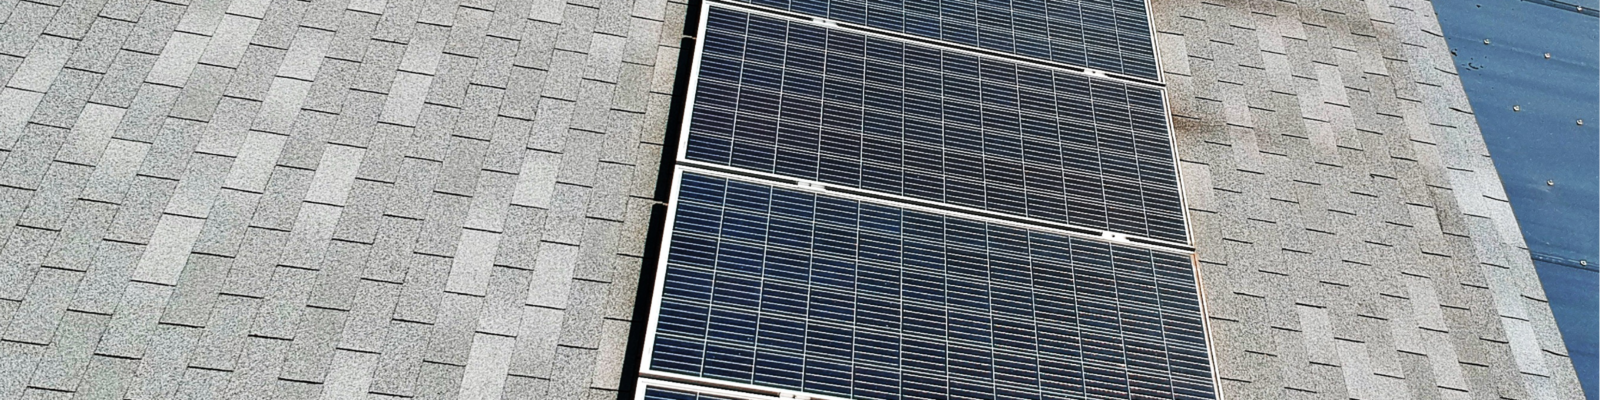 Sistema de energia solar fotovoltaica em Canoas - Elysia sistema fotovoltaico Rio Grande do Sul